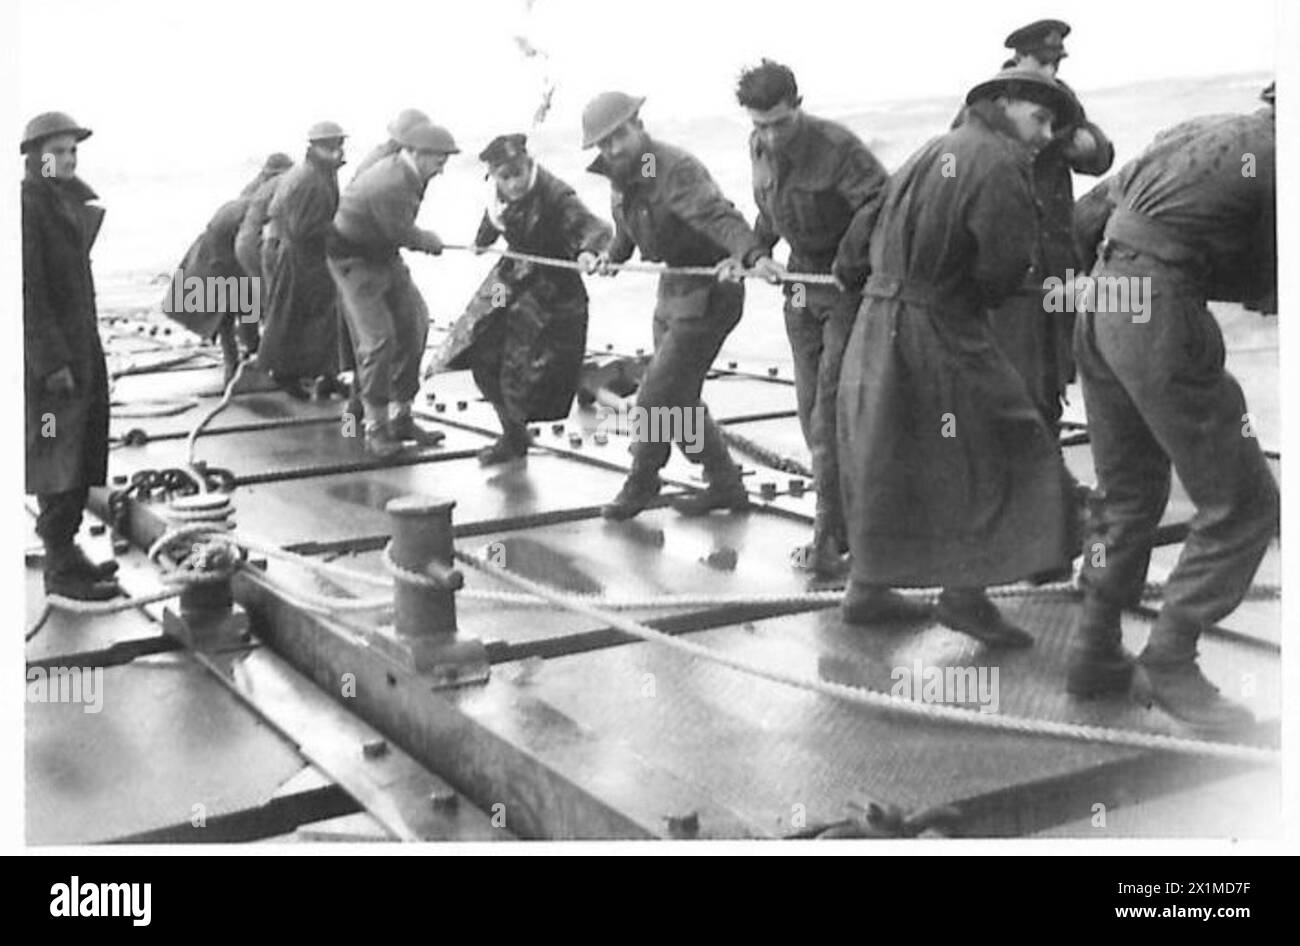 ITALIE : DÉBARQUEMENT ALLIÉ AU SUD DE ROME - marins essayant de maintenir le ponton en position dans la mer agitée, armée britannique Banque D'Images